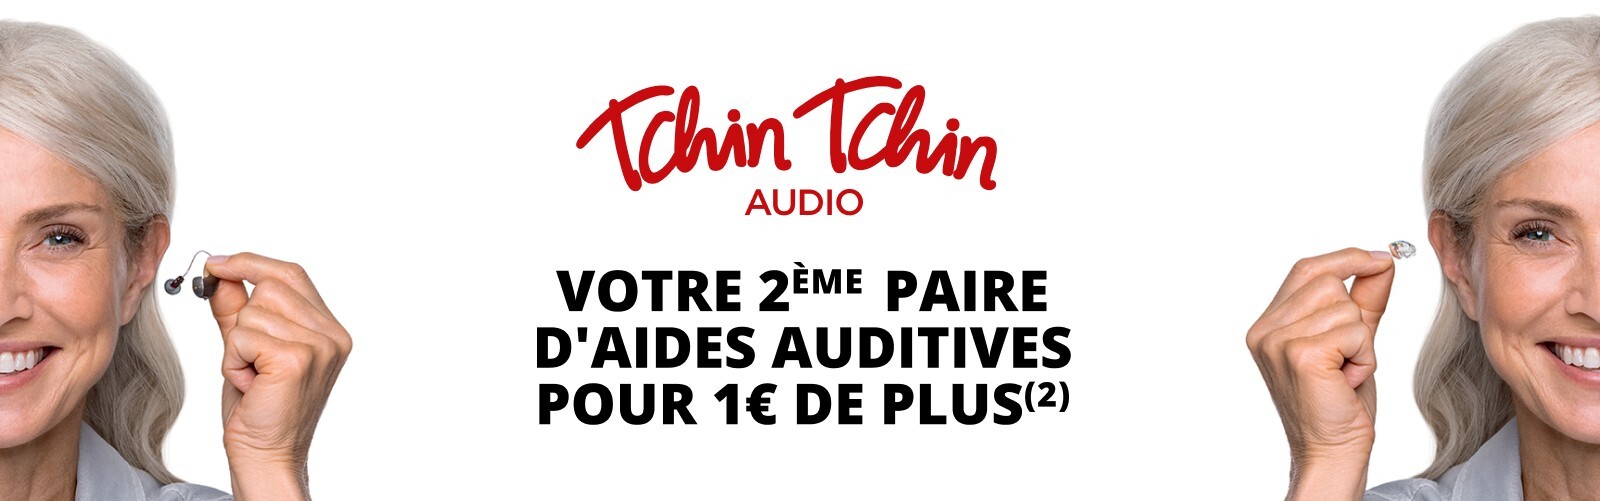 Tchin Tchin Audio - Votre 2ème paire d'aides auditives pour 1€ de plus